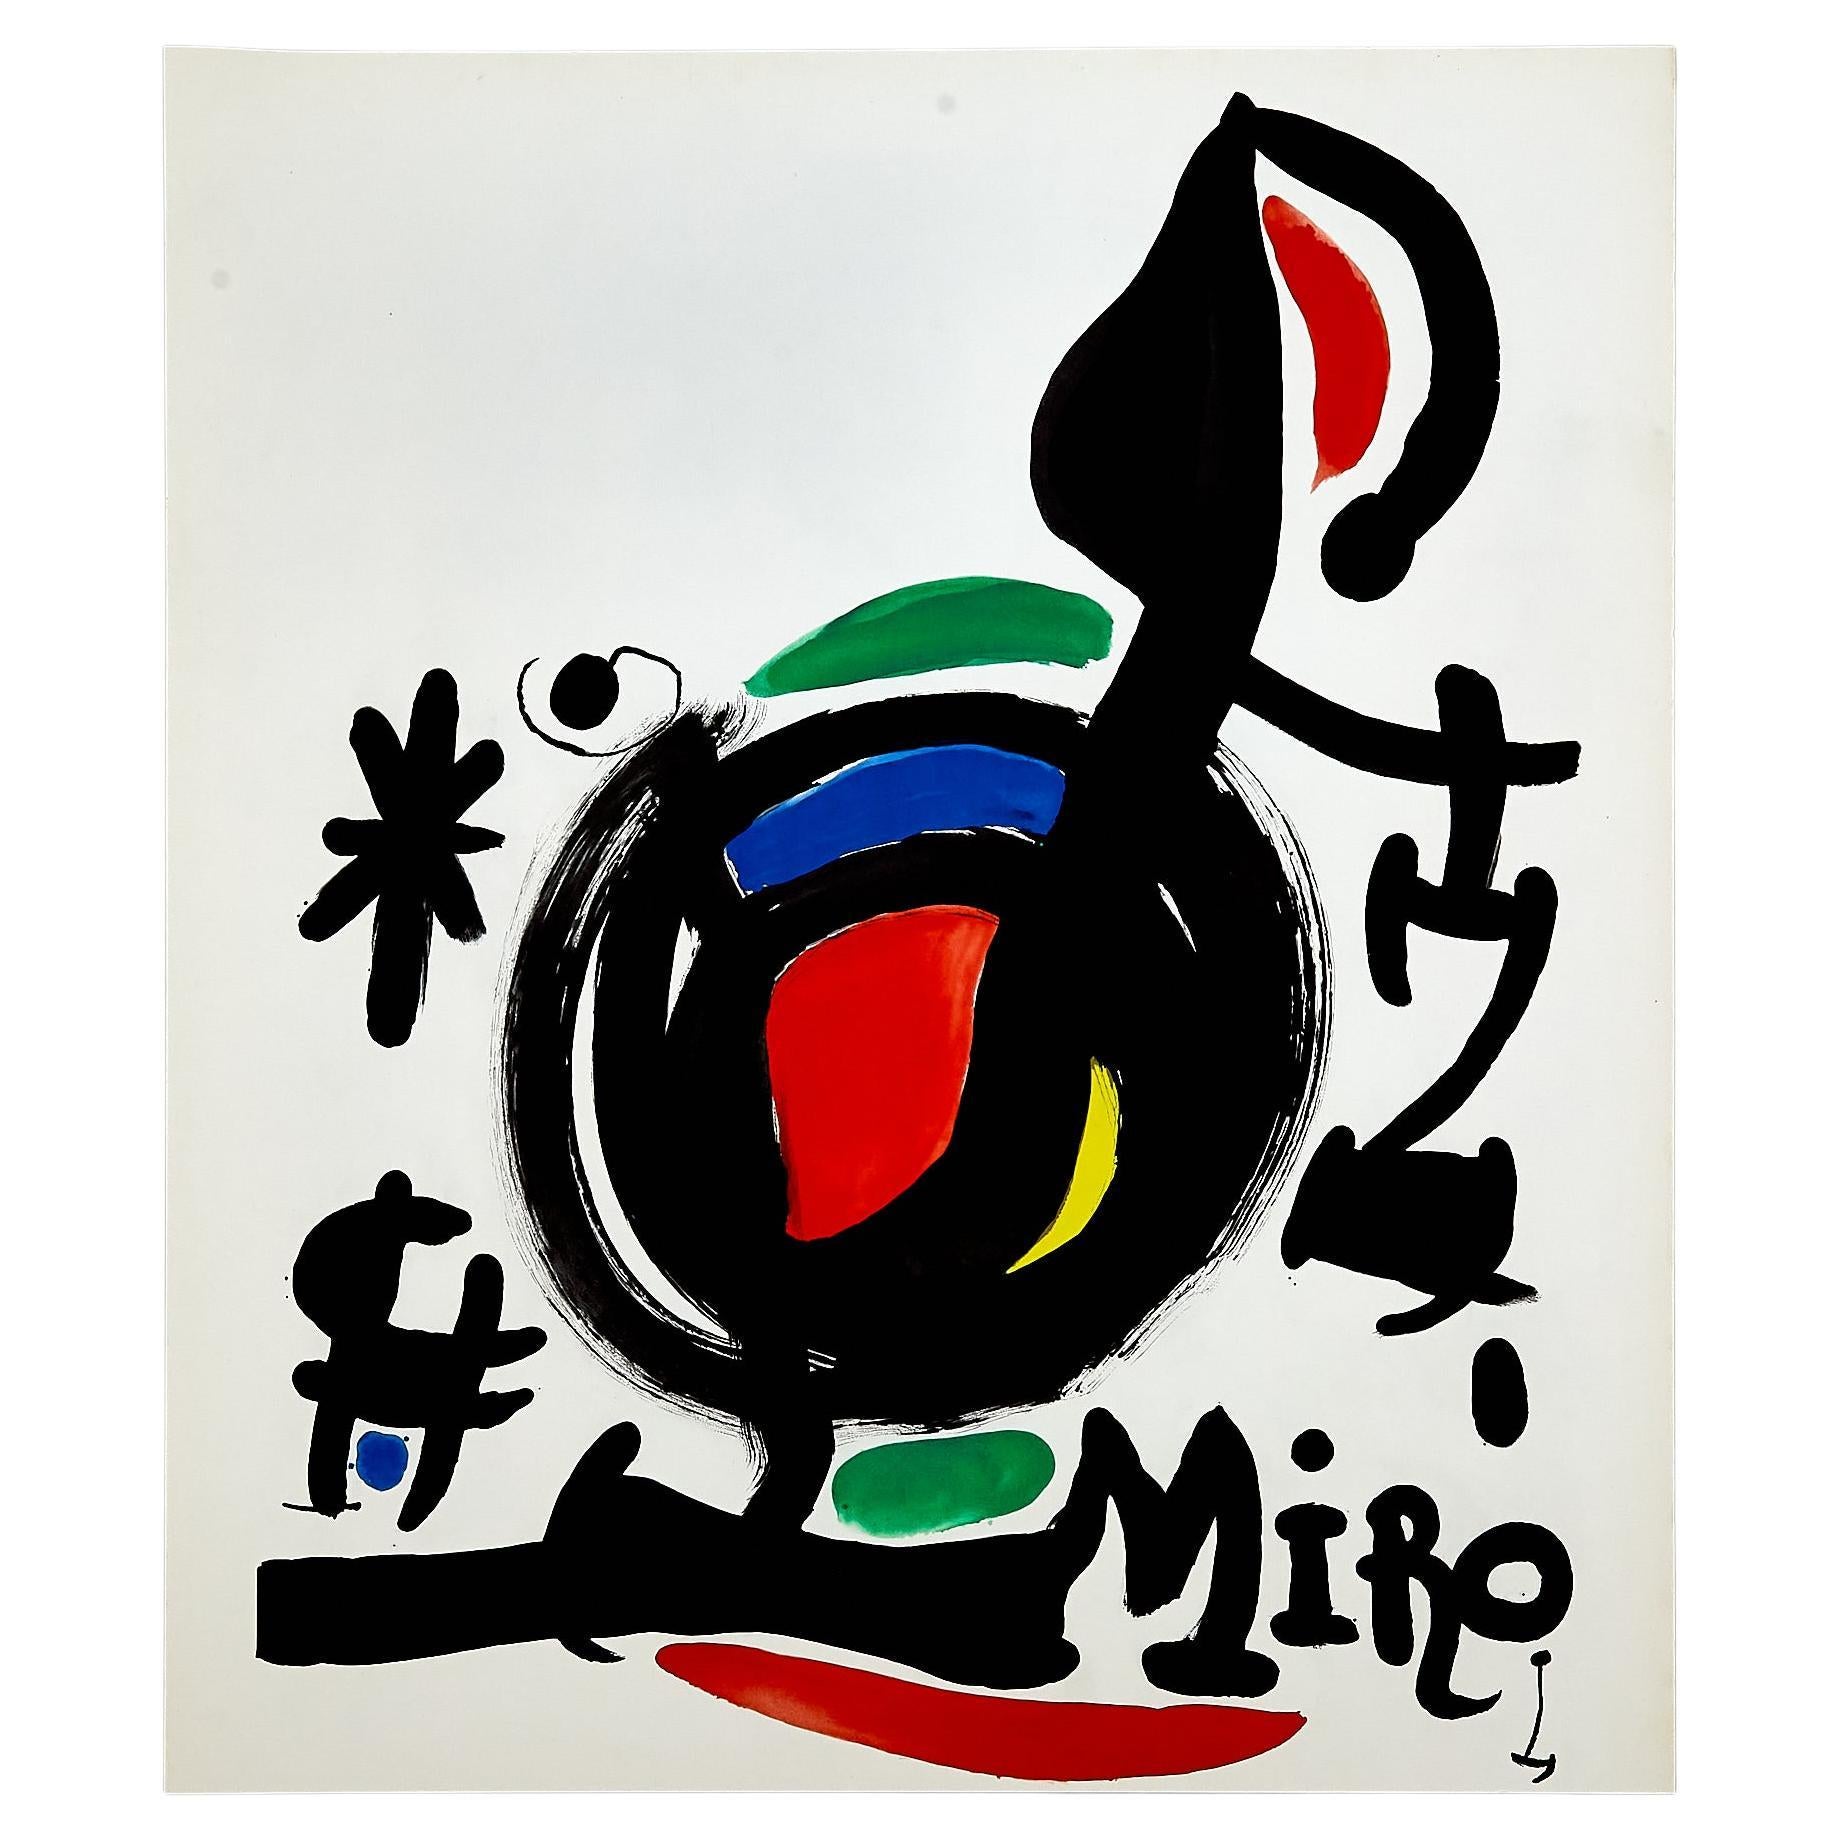  Hochwertige Farblithografie von Joan Miró, um 1960.